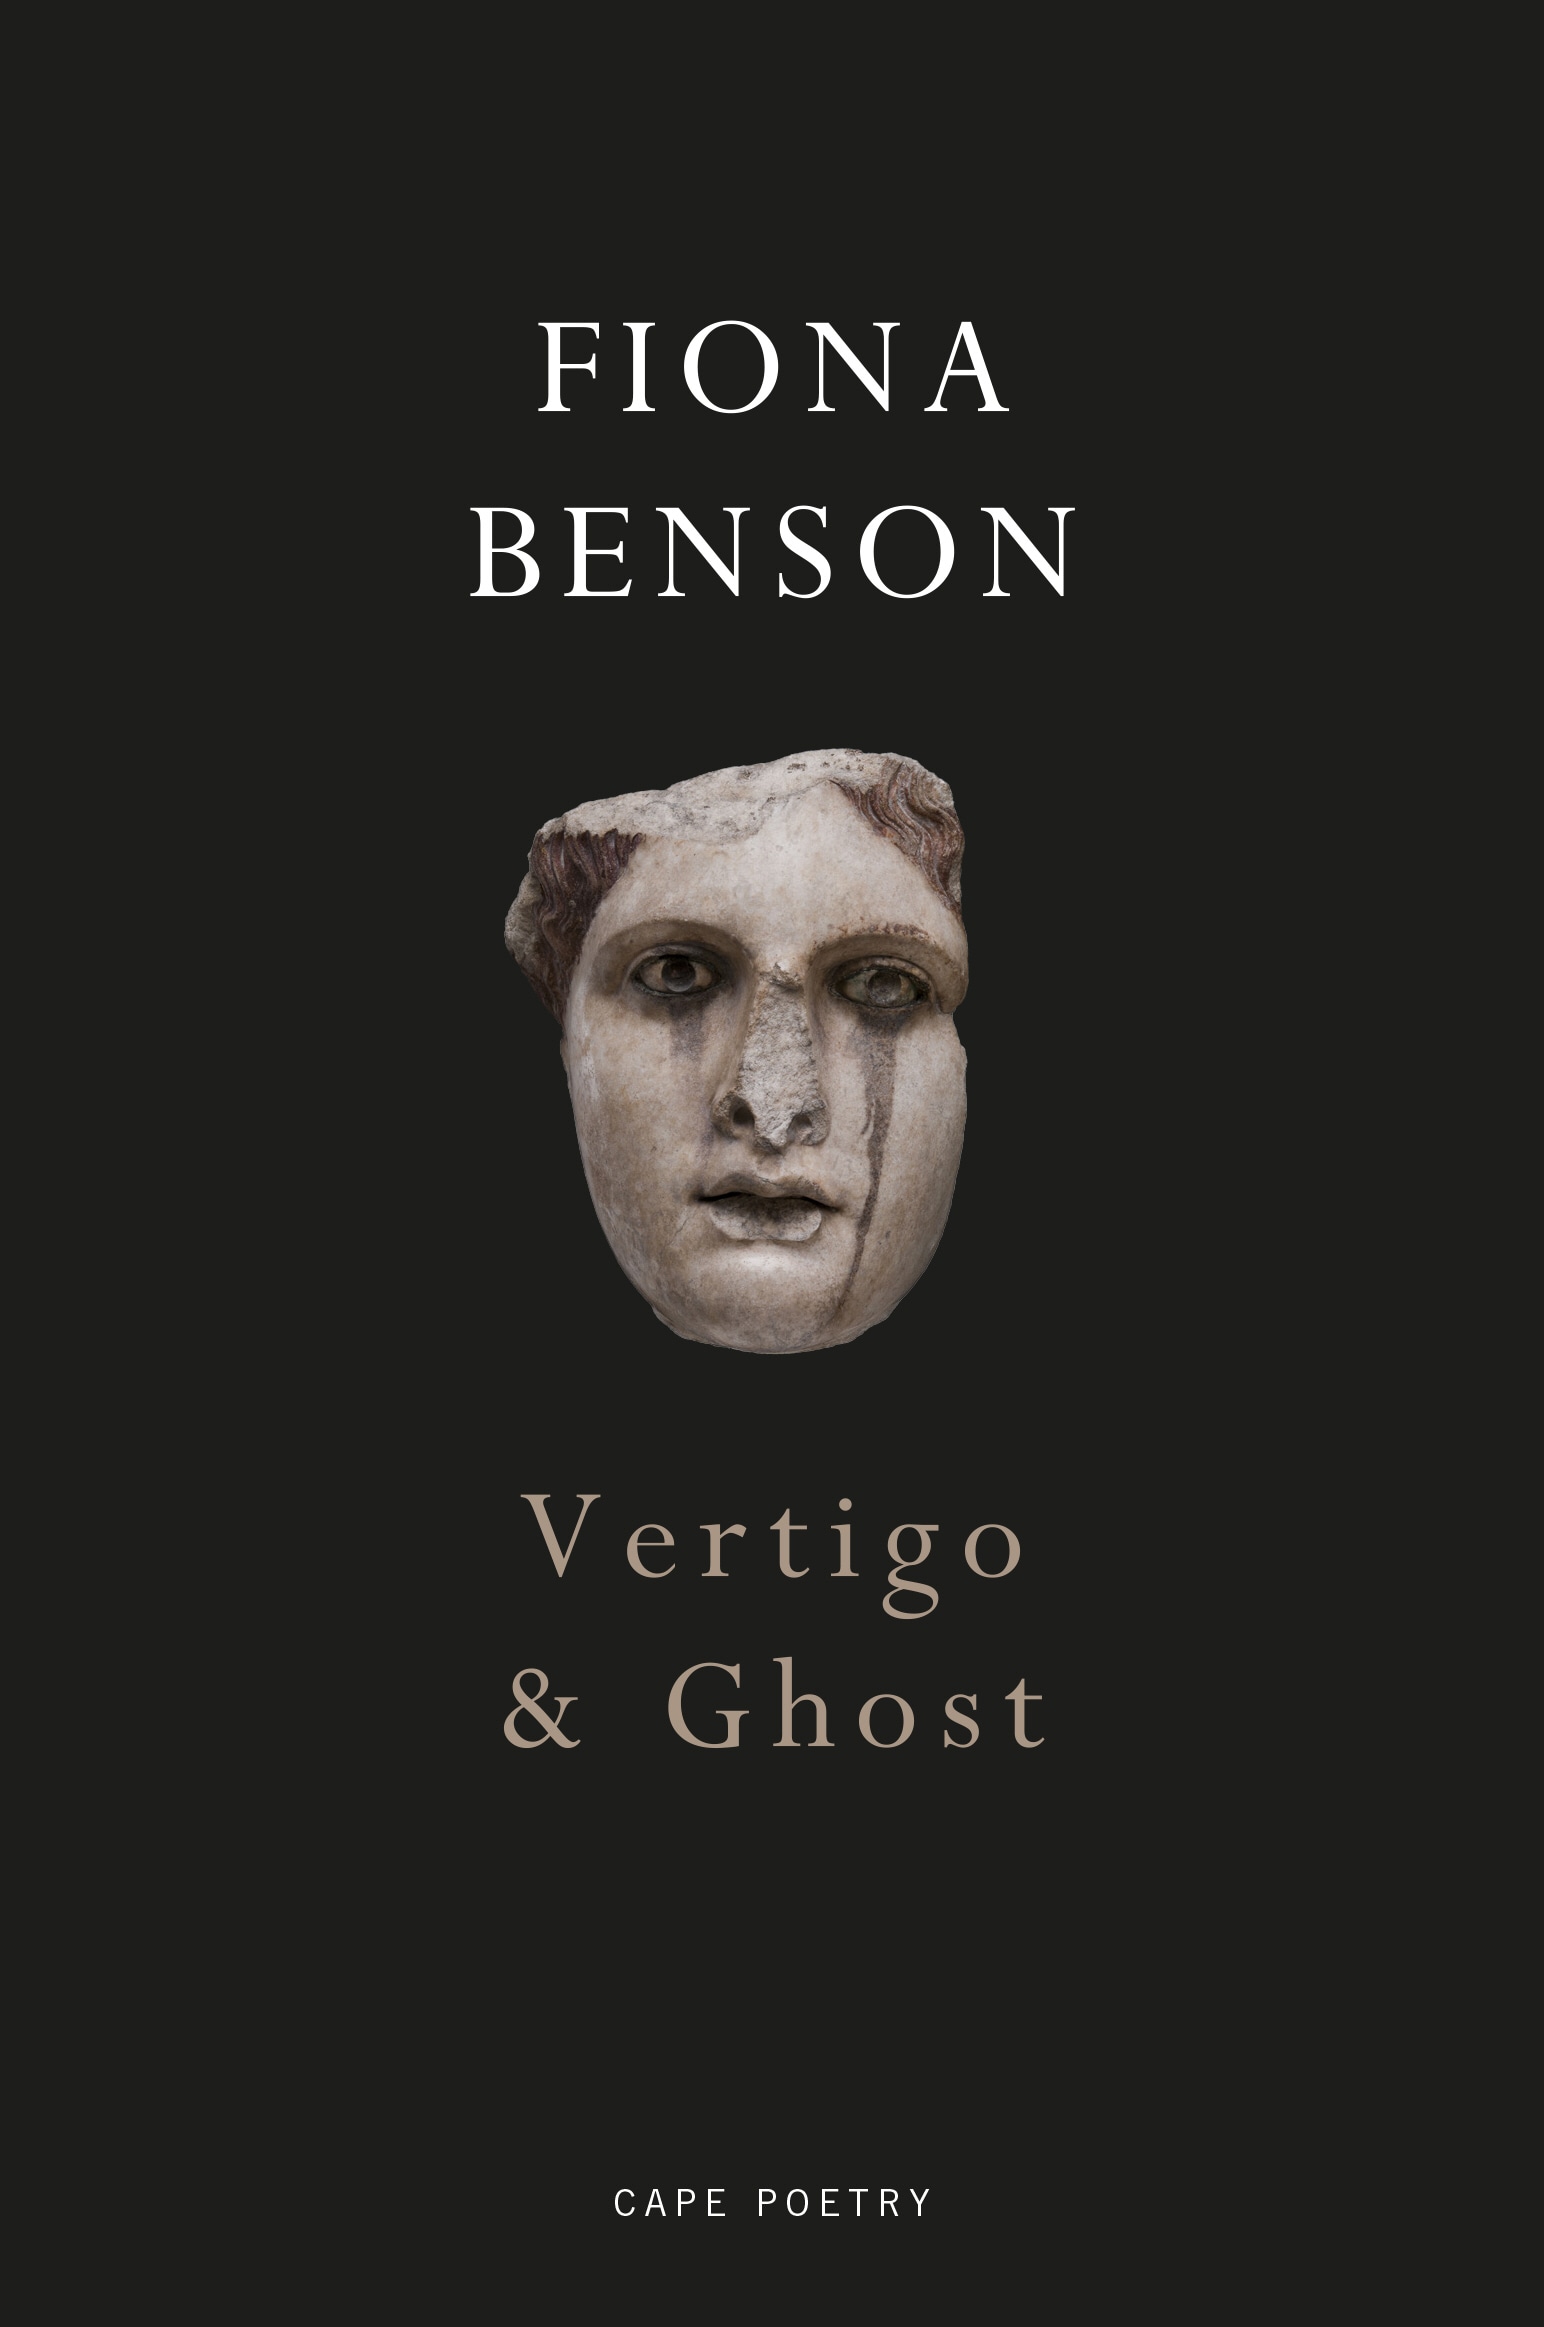 Book “Vertigo & Ghost” by Fiona Benson — January 3, 2019